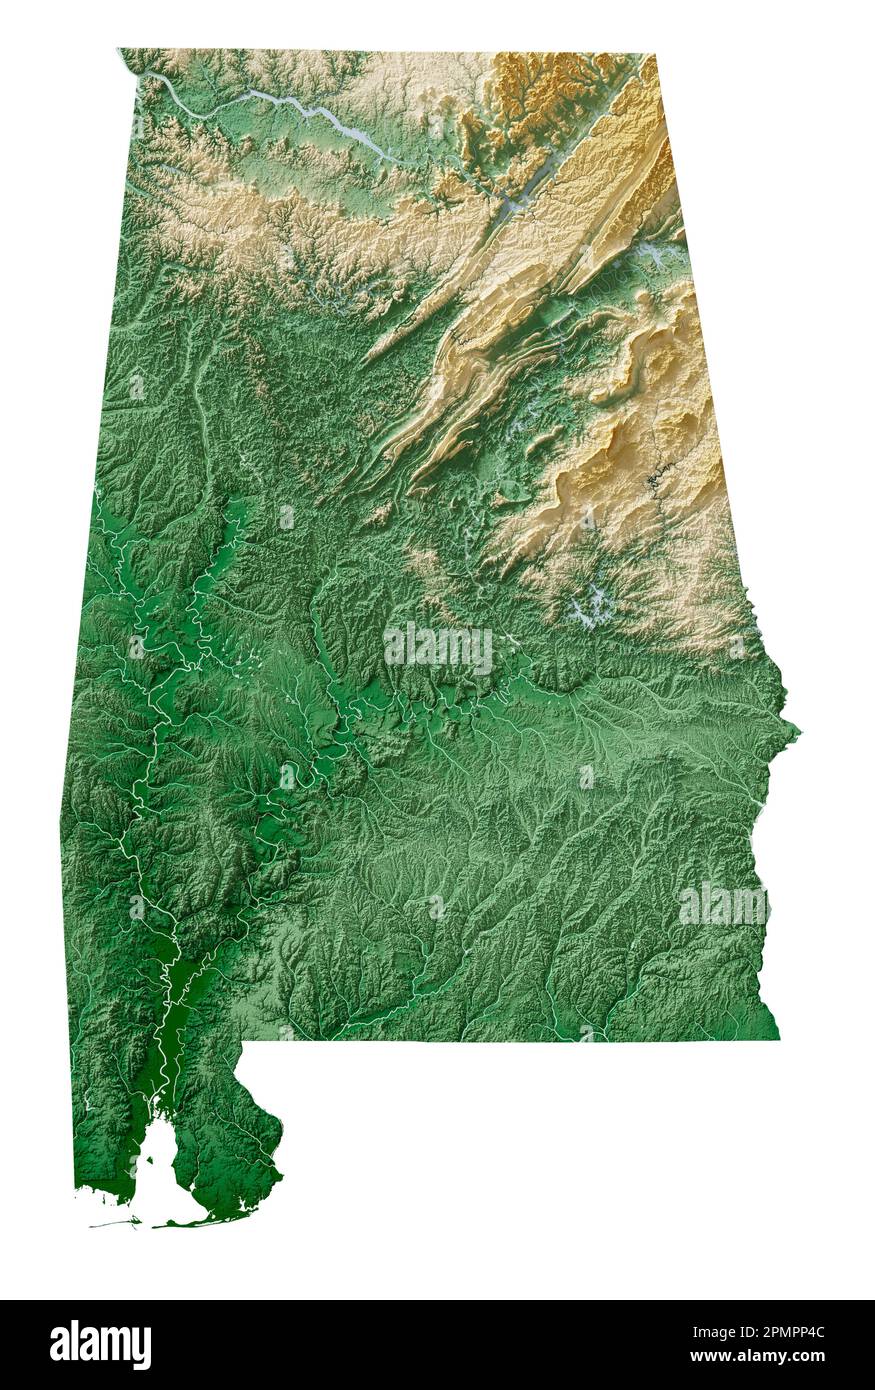 Der US-Bundesstaat Alabama. Sehr detailliertes 3D-Rendering schattierter Reliefkarten mit Flüssen und Seen. Farbig nach Höhe. Erstellt mit Satellitendaten. Stockfoto